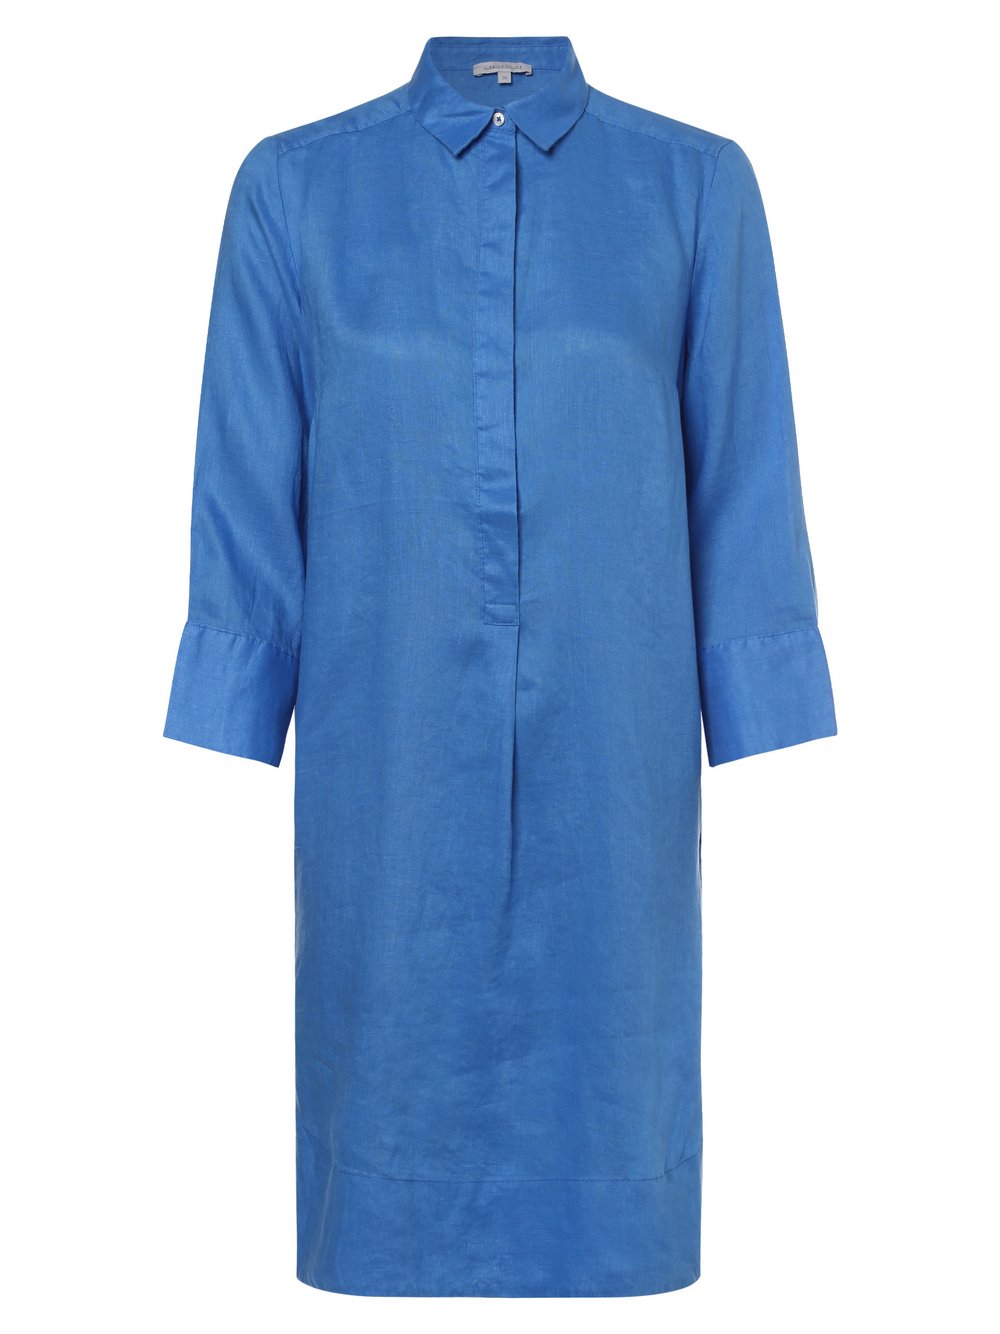 Apriori - Damska sukienka lniana, niebieski